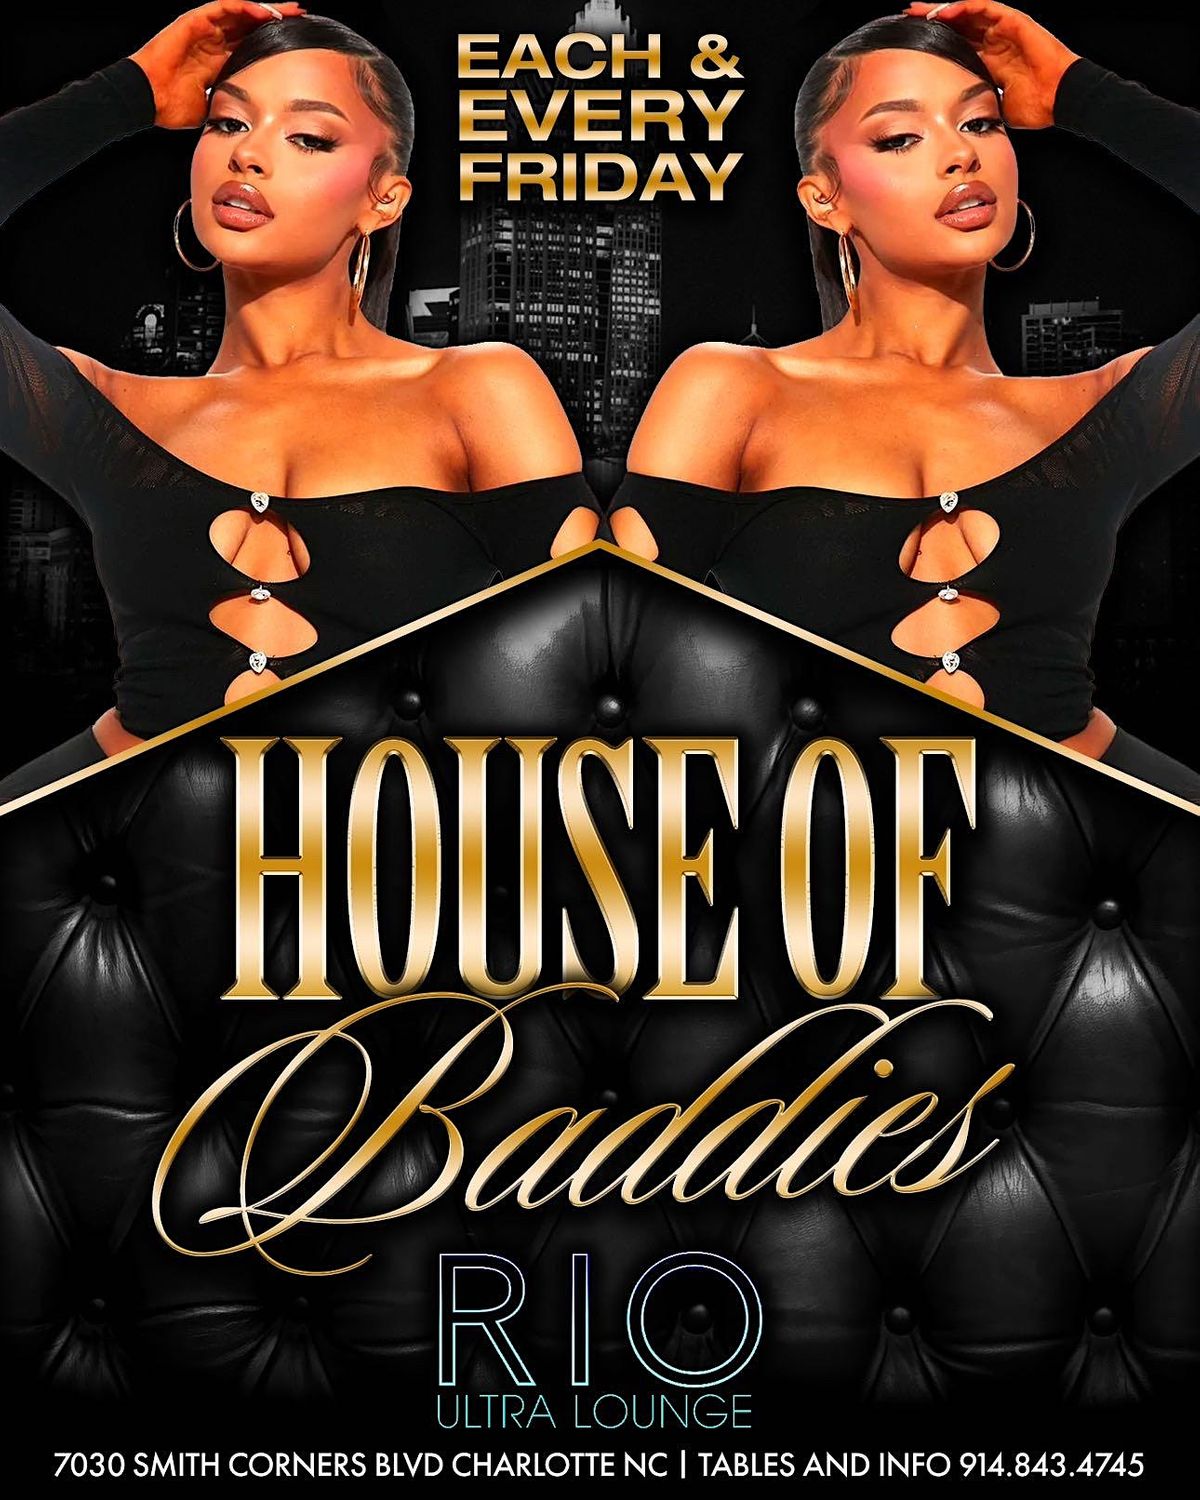 House of baddies at rio lounge! 2 bottles $400